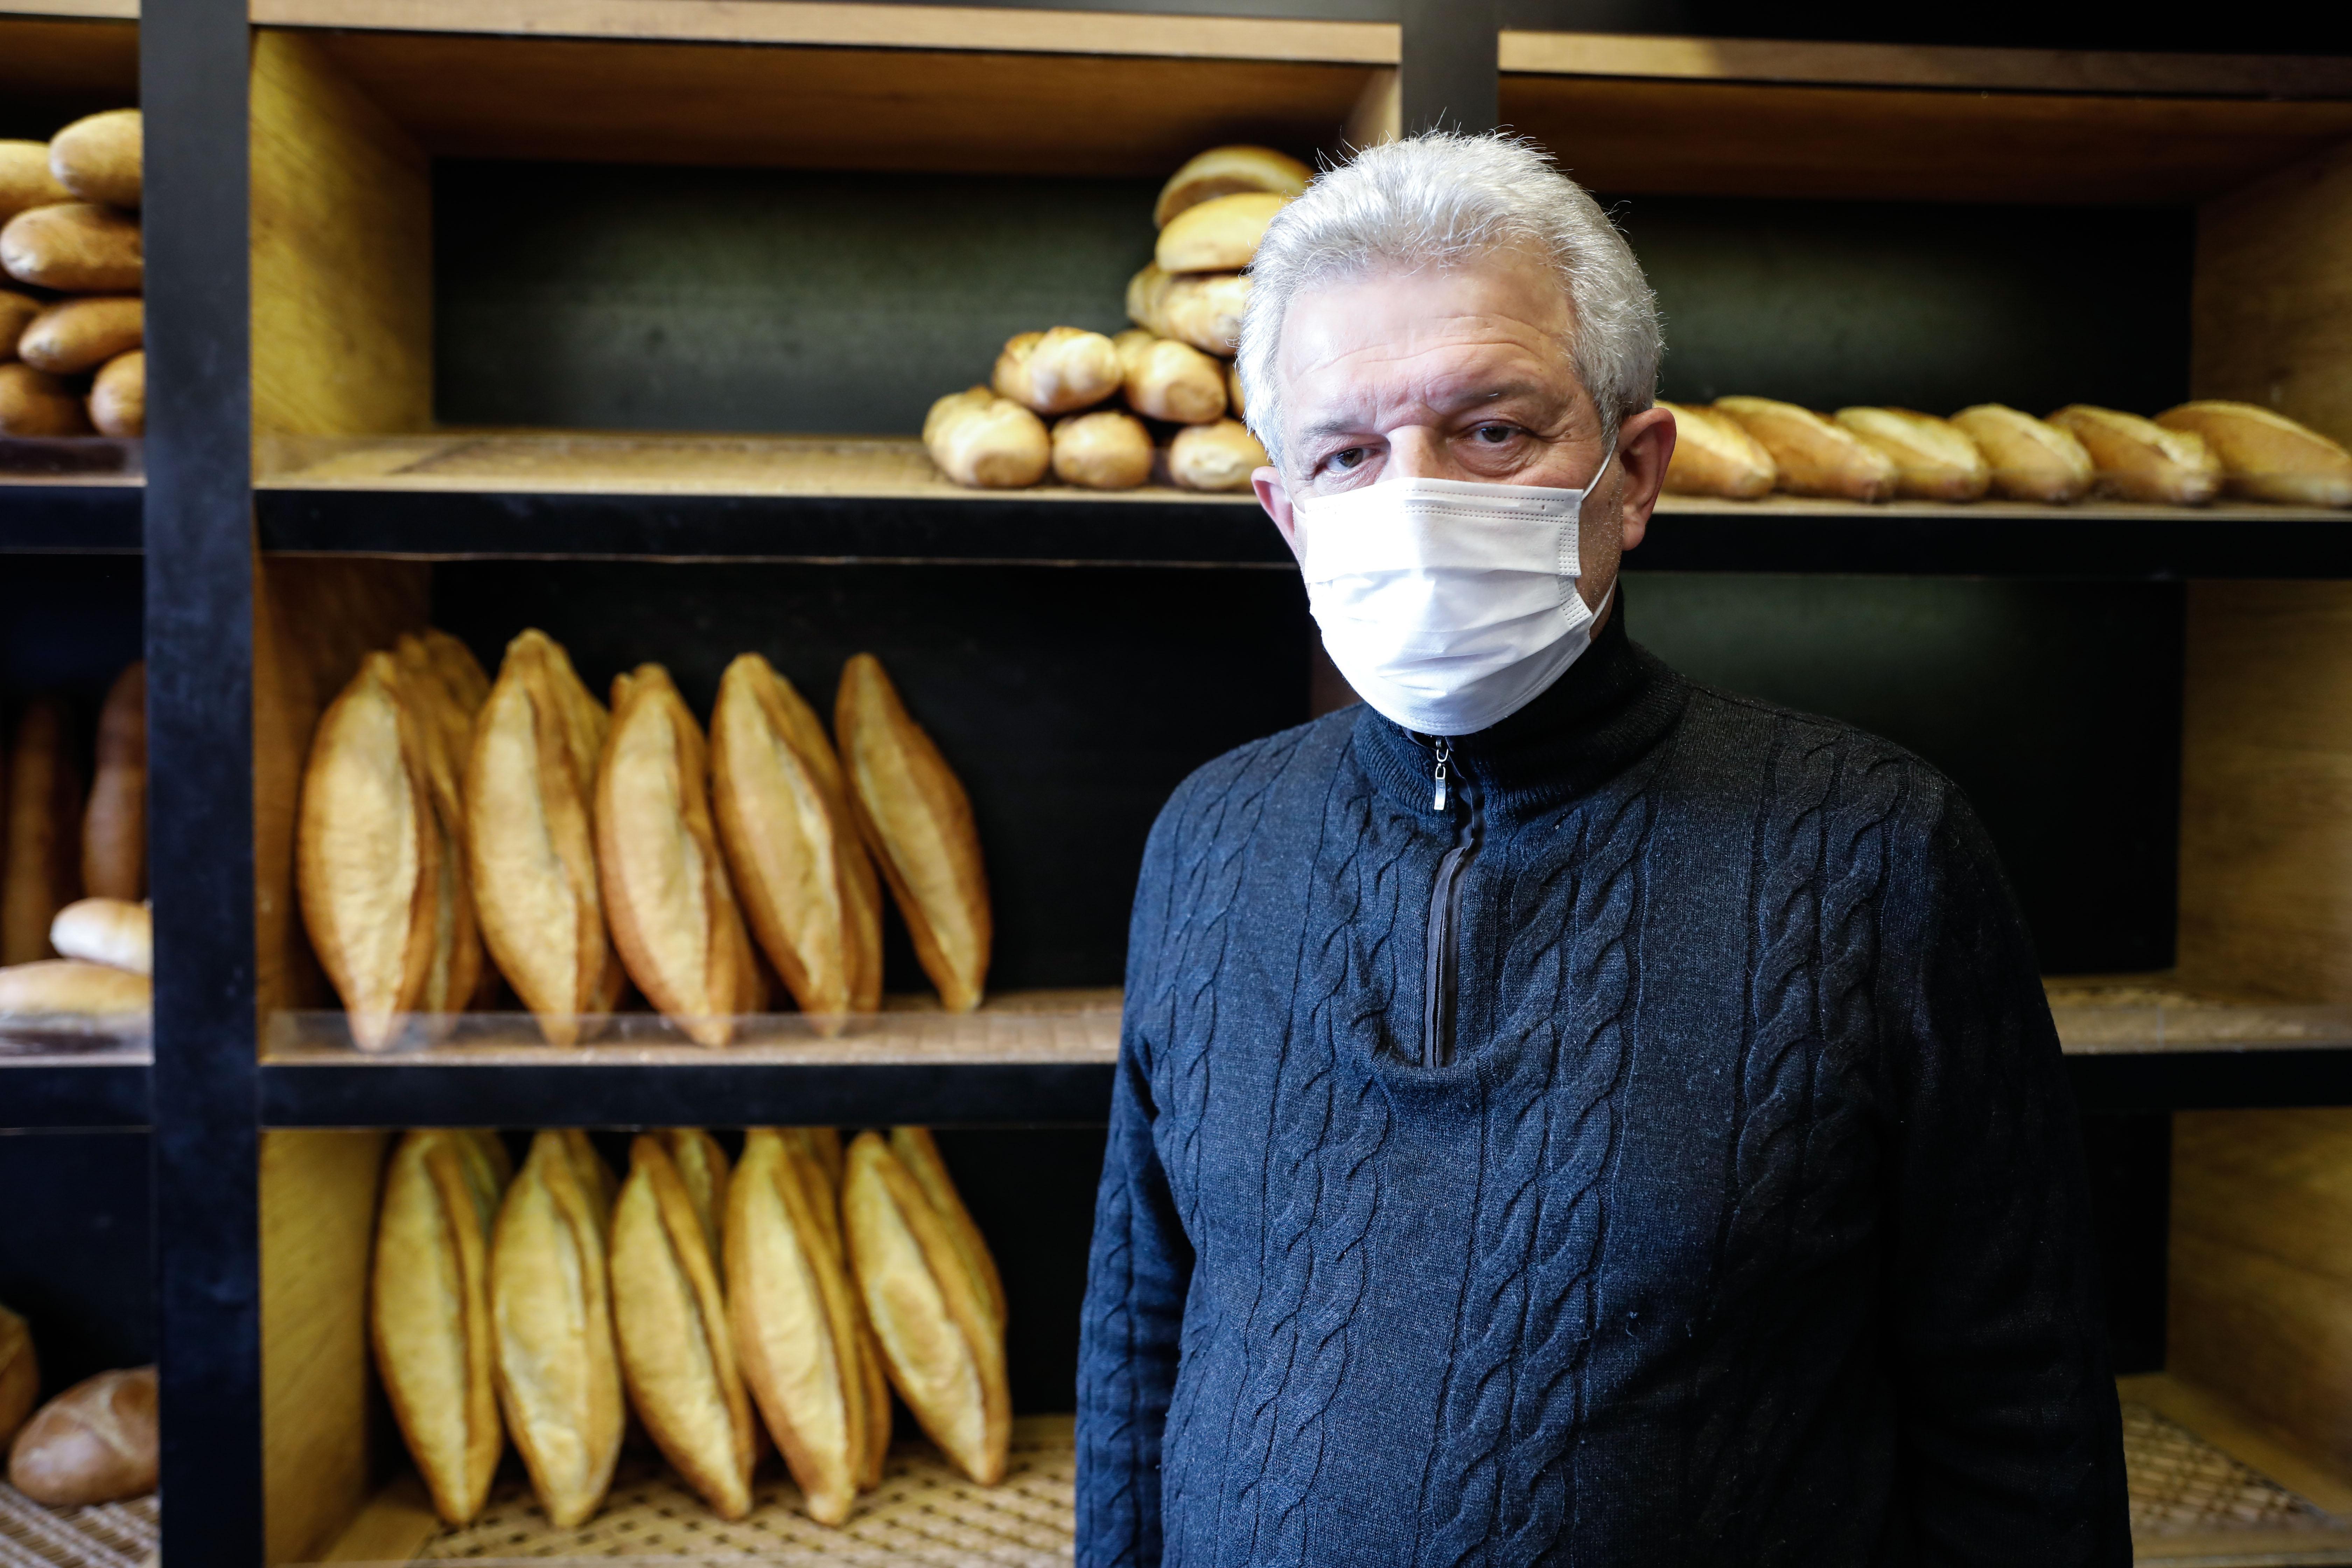 İstanbulda ekmeğe zam tartışması; İlçeden ilçeye fiyat farkı olabilir